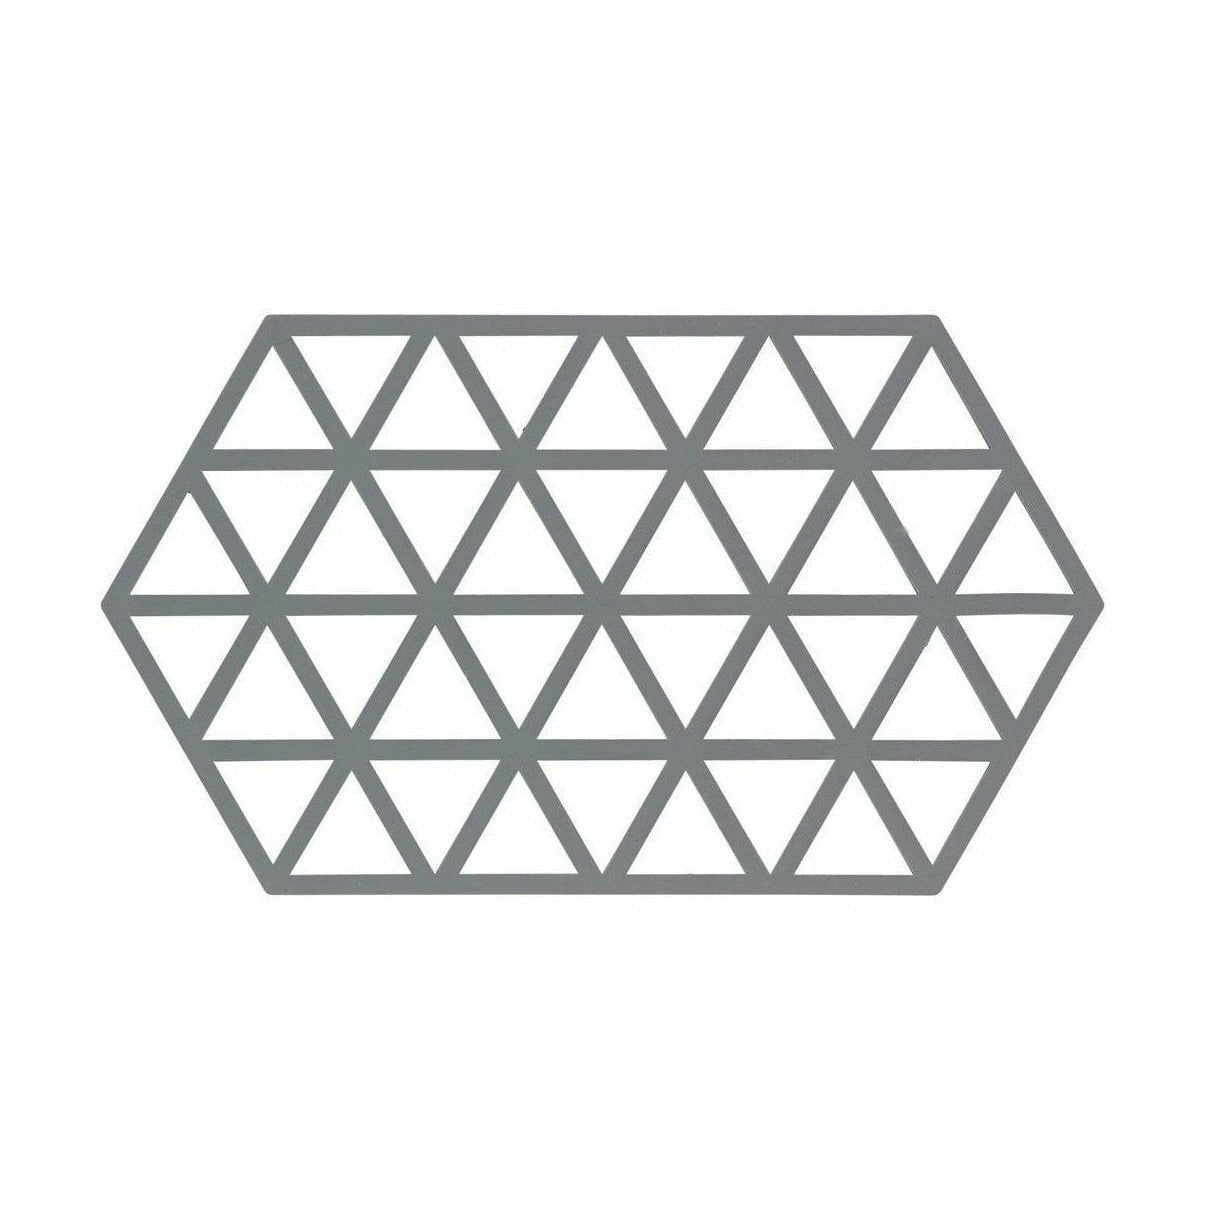 Dánská zóna trojúhelníků 24 x14 cm, chladná šedá